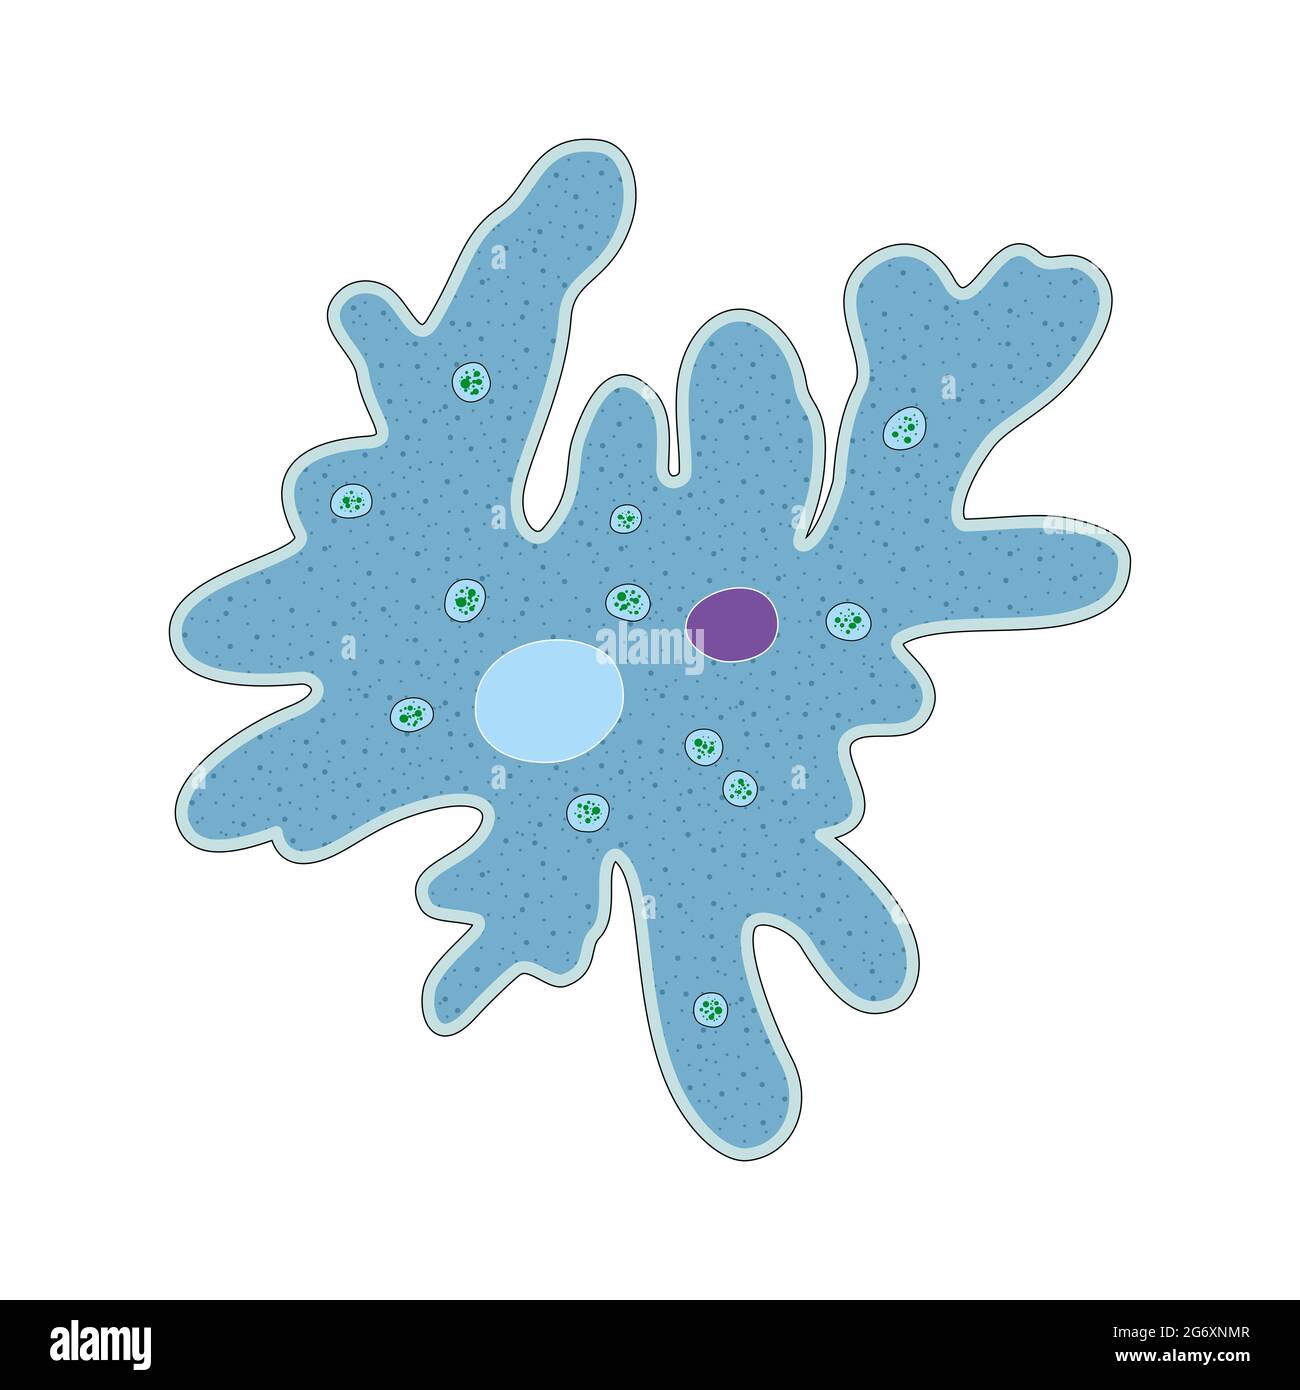 L'amibe est un type d'organisme unicellulaire qui a la capacité de modifier sa forme Banque D'Images